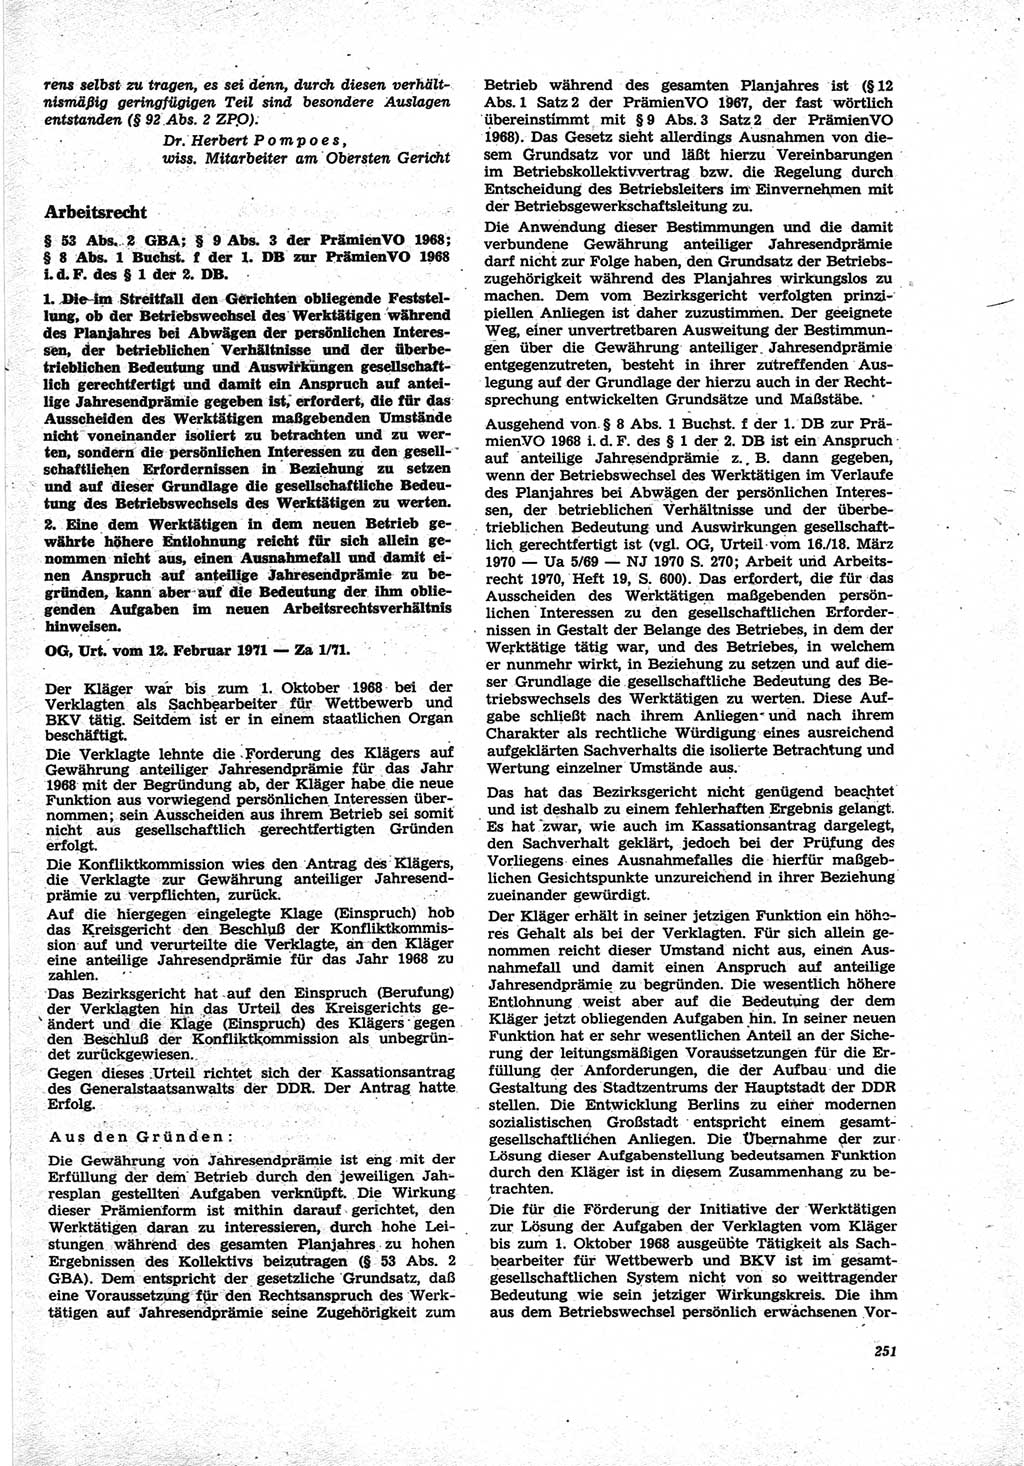 Neue Justiz (NJ), Zeitschrift für Recht und Rechtswissenschaft [Deutsche Demokratische Republik (DDR)], 25. Jahrgang 1971, Seite 251 (NJ DDR 1971, S. 251)